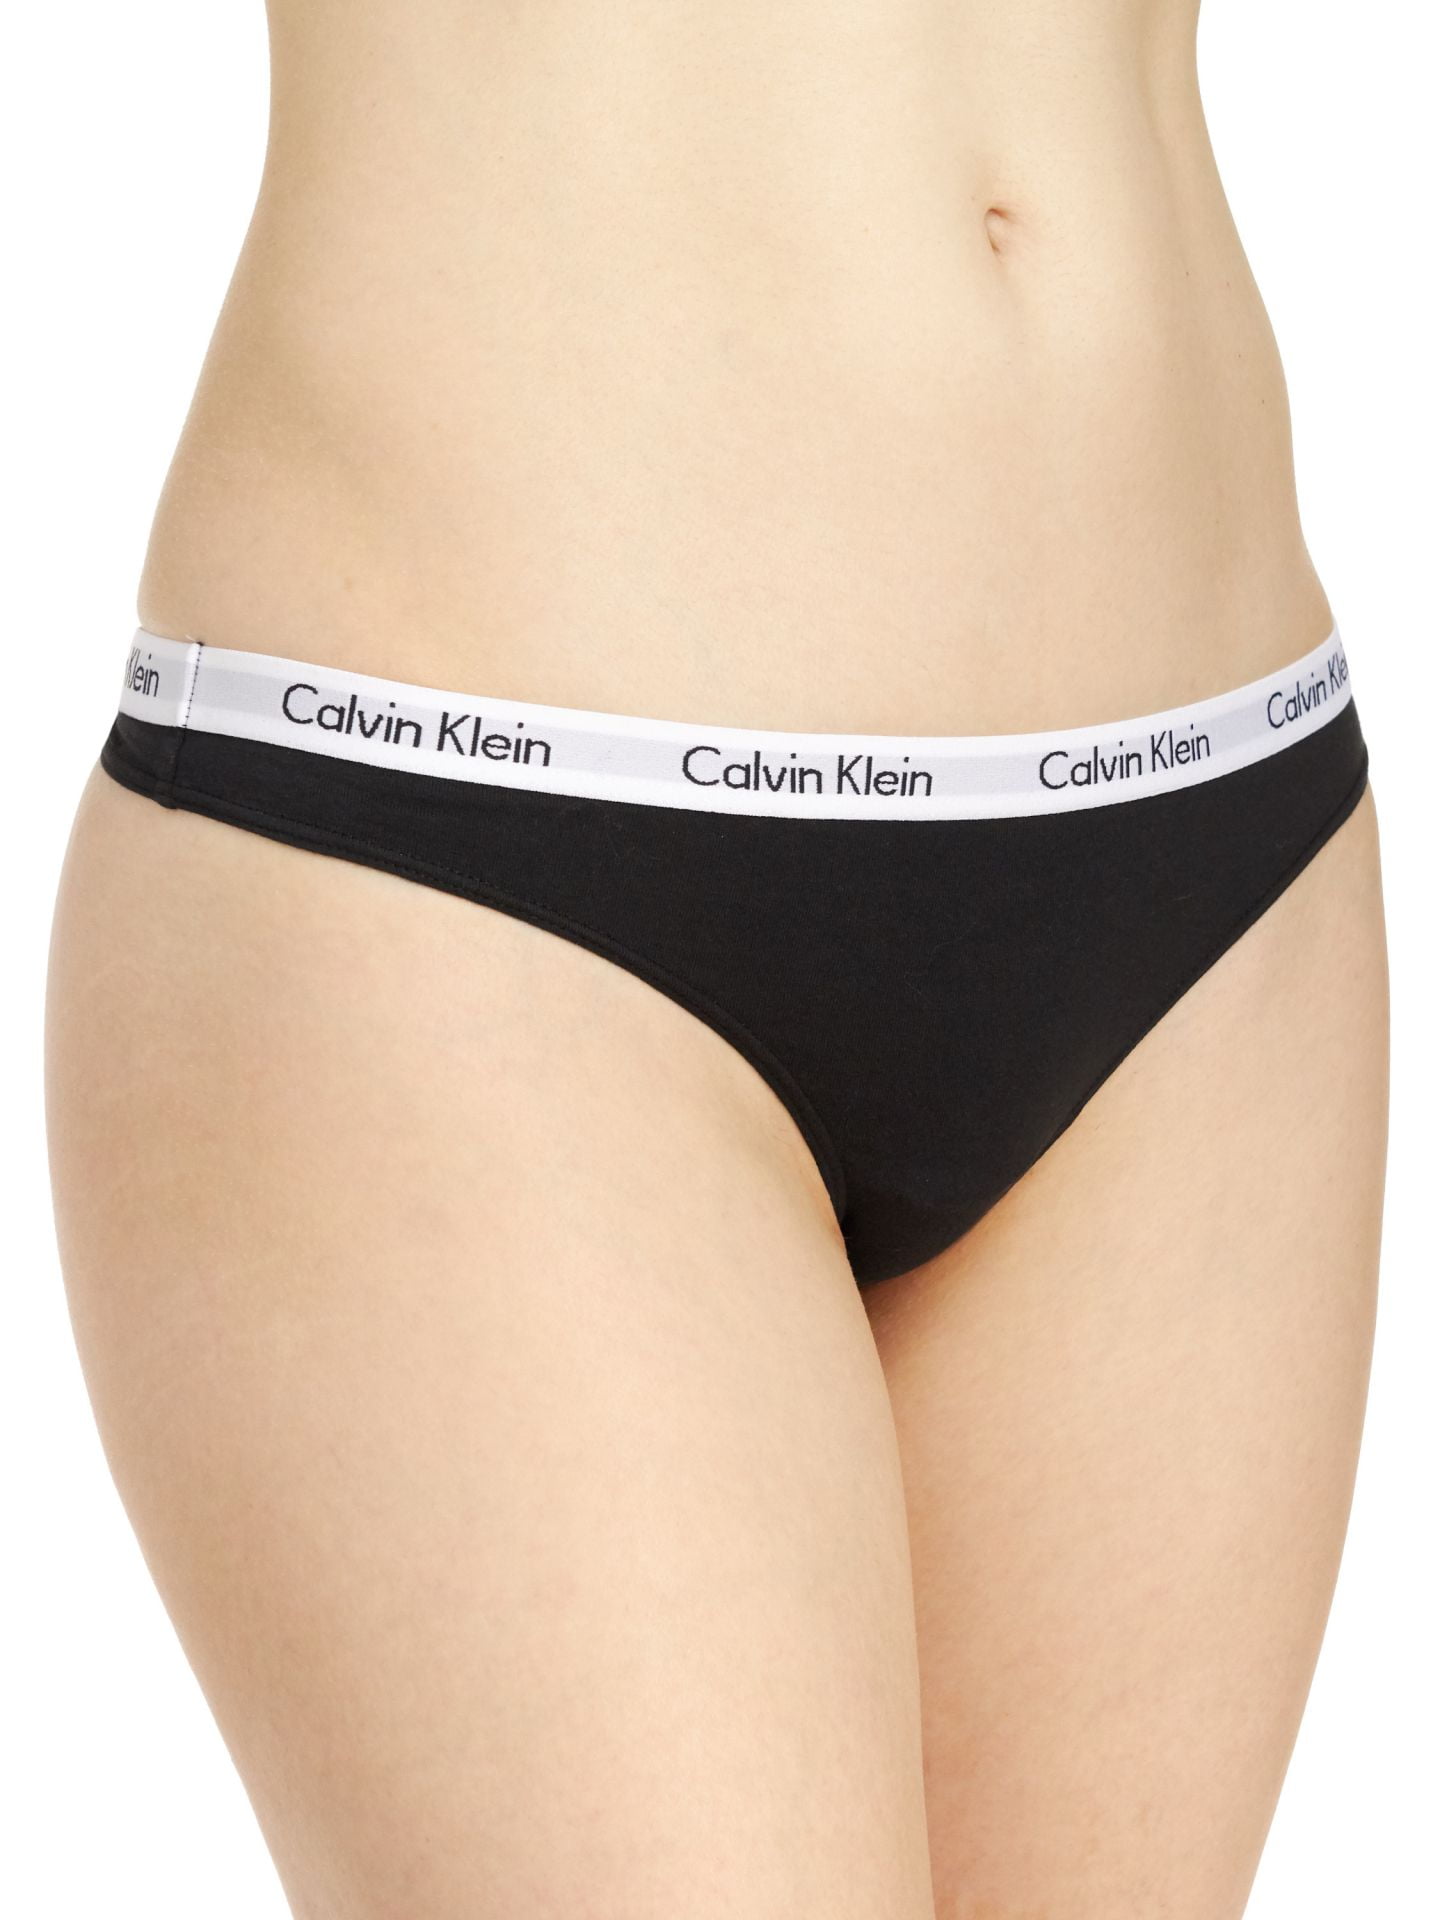 Calvin Klein Women\'s Carousel Thong - 3 Pack, Black/Grey/White, Large